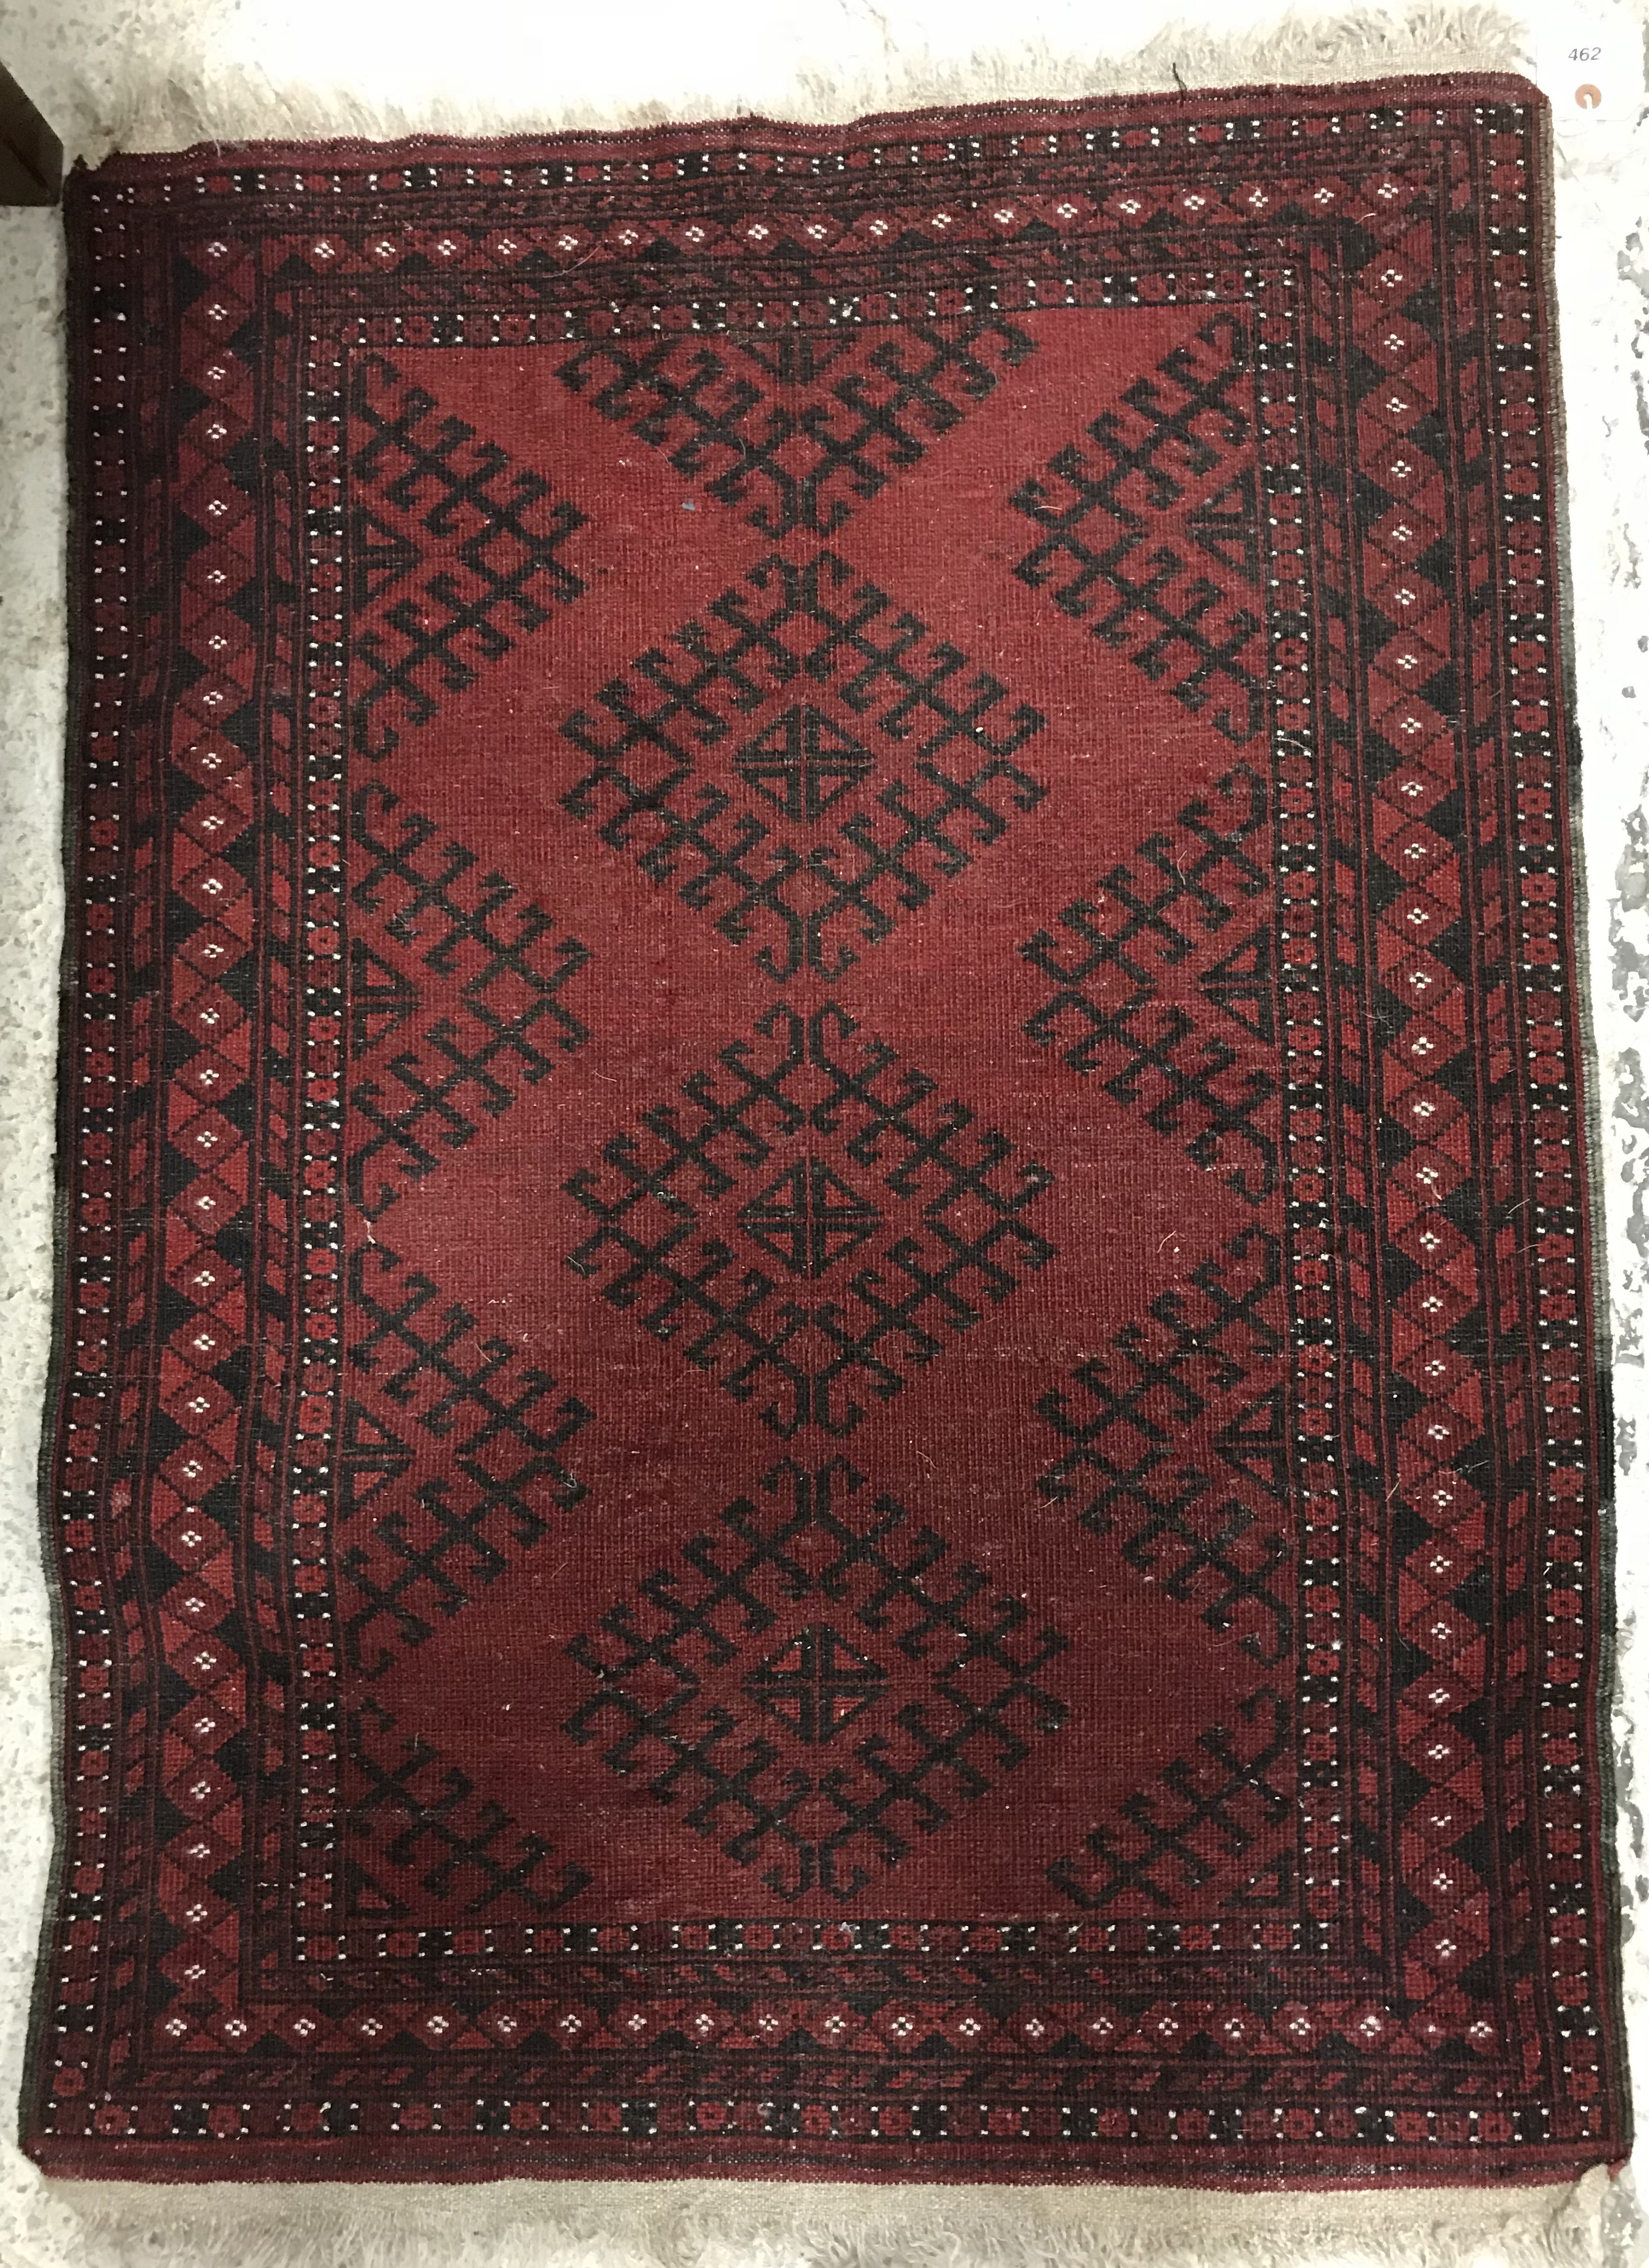 An Afghan rug, - Image 2 of 2